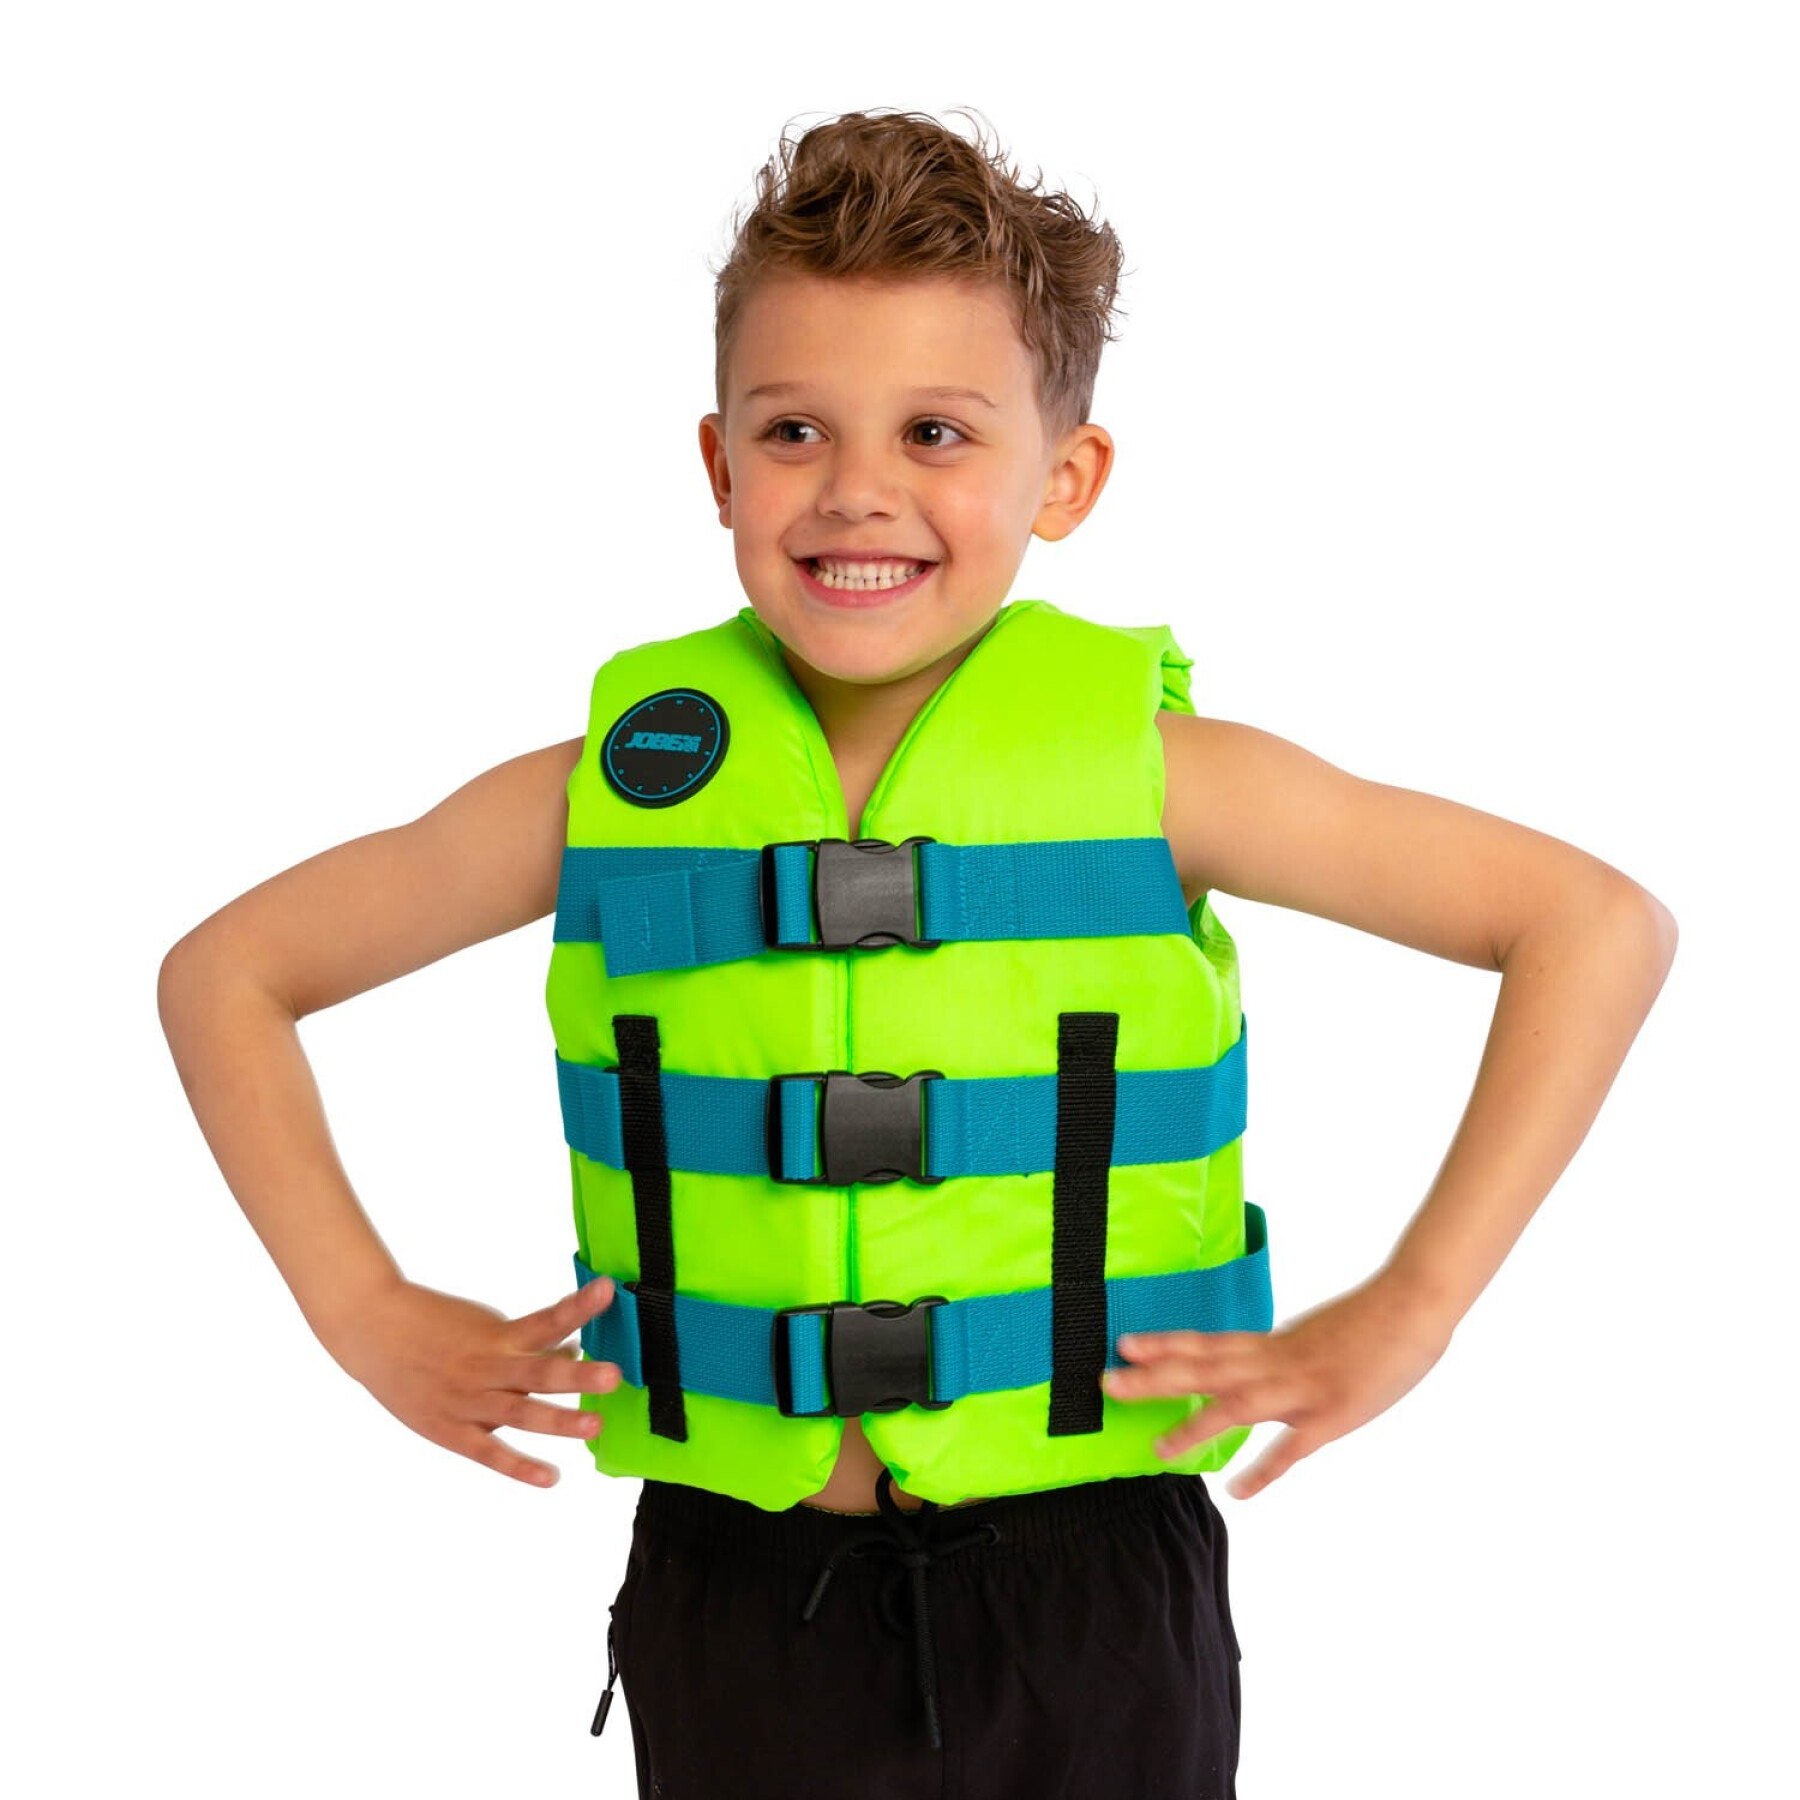 Children's nylon lifejacket Jobe Sports